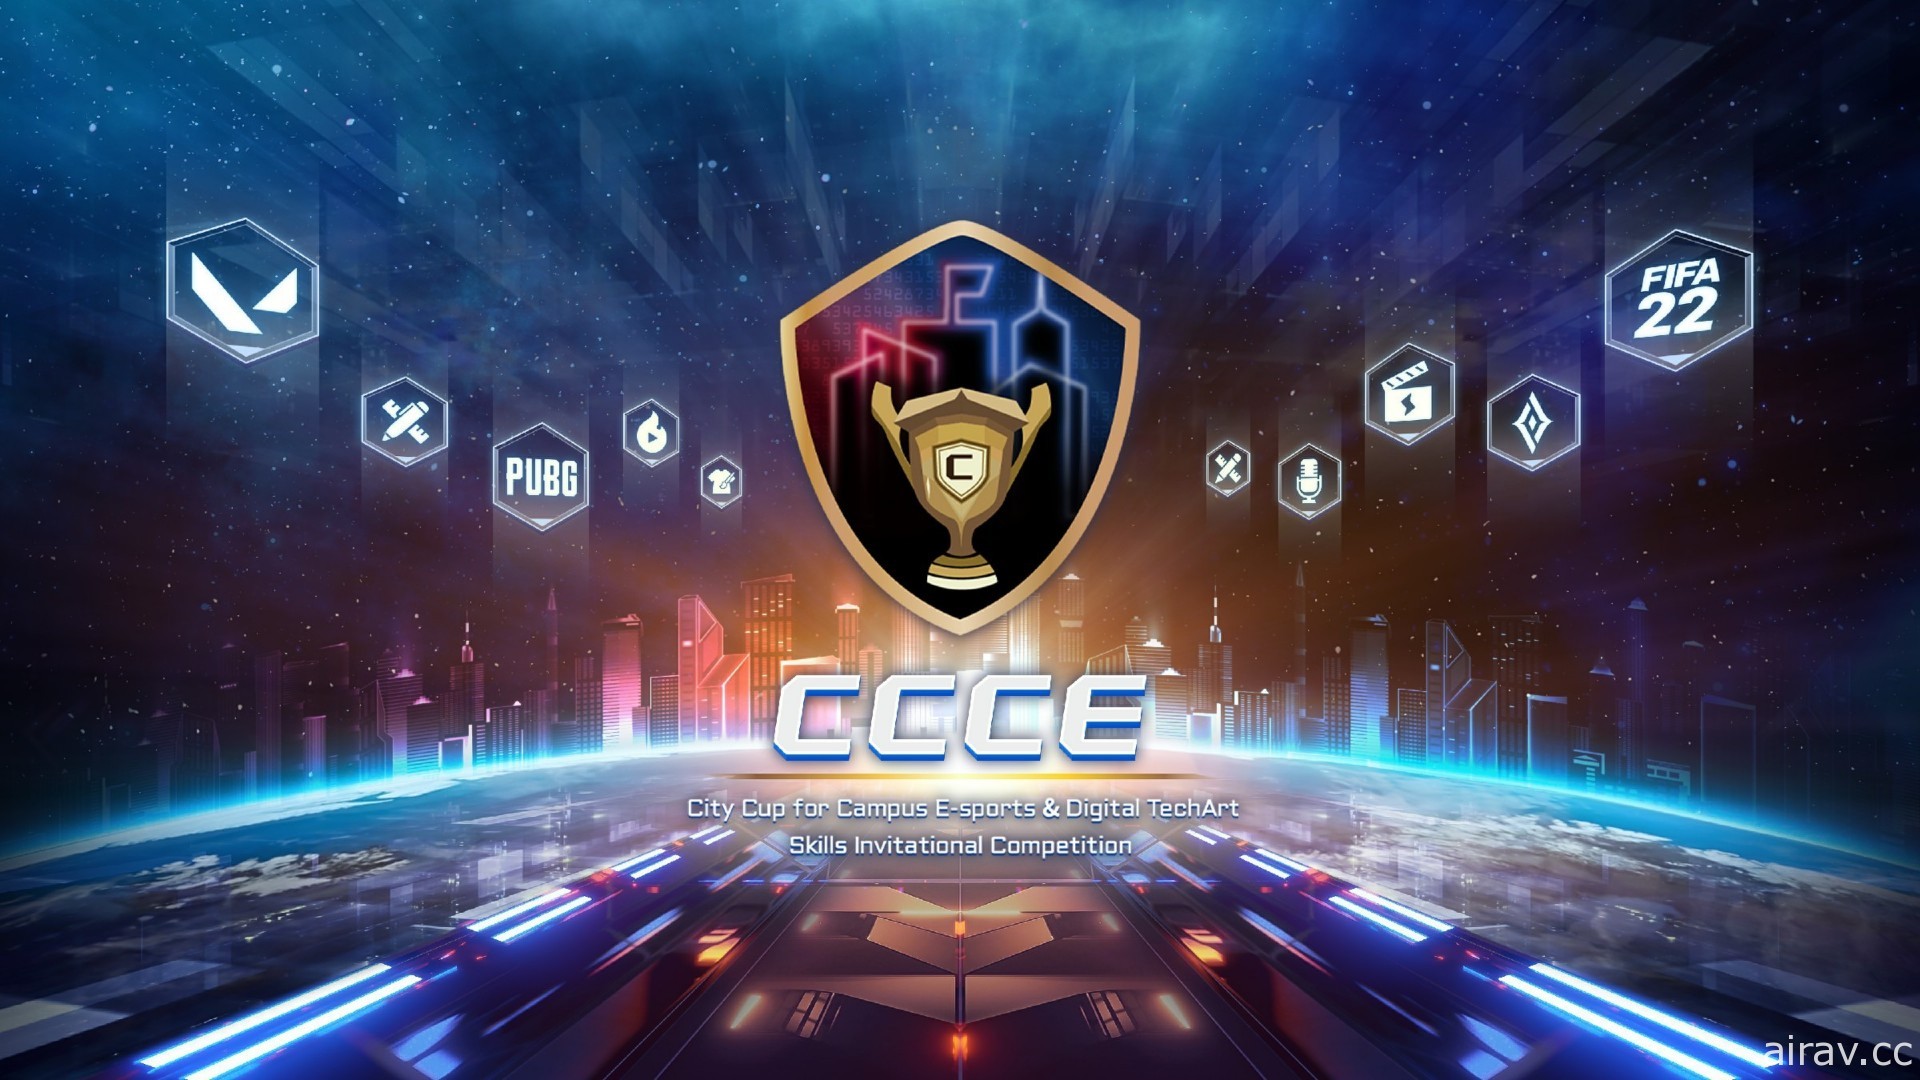 第四届“CCCE 城市杯”电竞邀请赛开放报名 包含《PUBG》《特战英豪》《传说对决》等